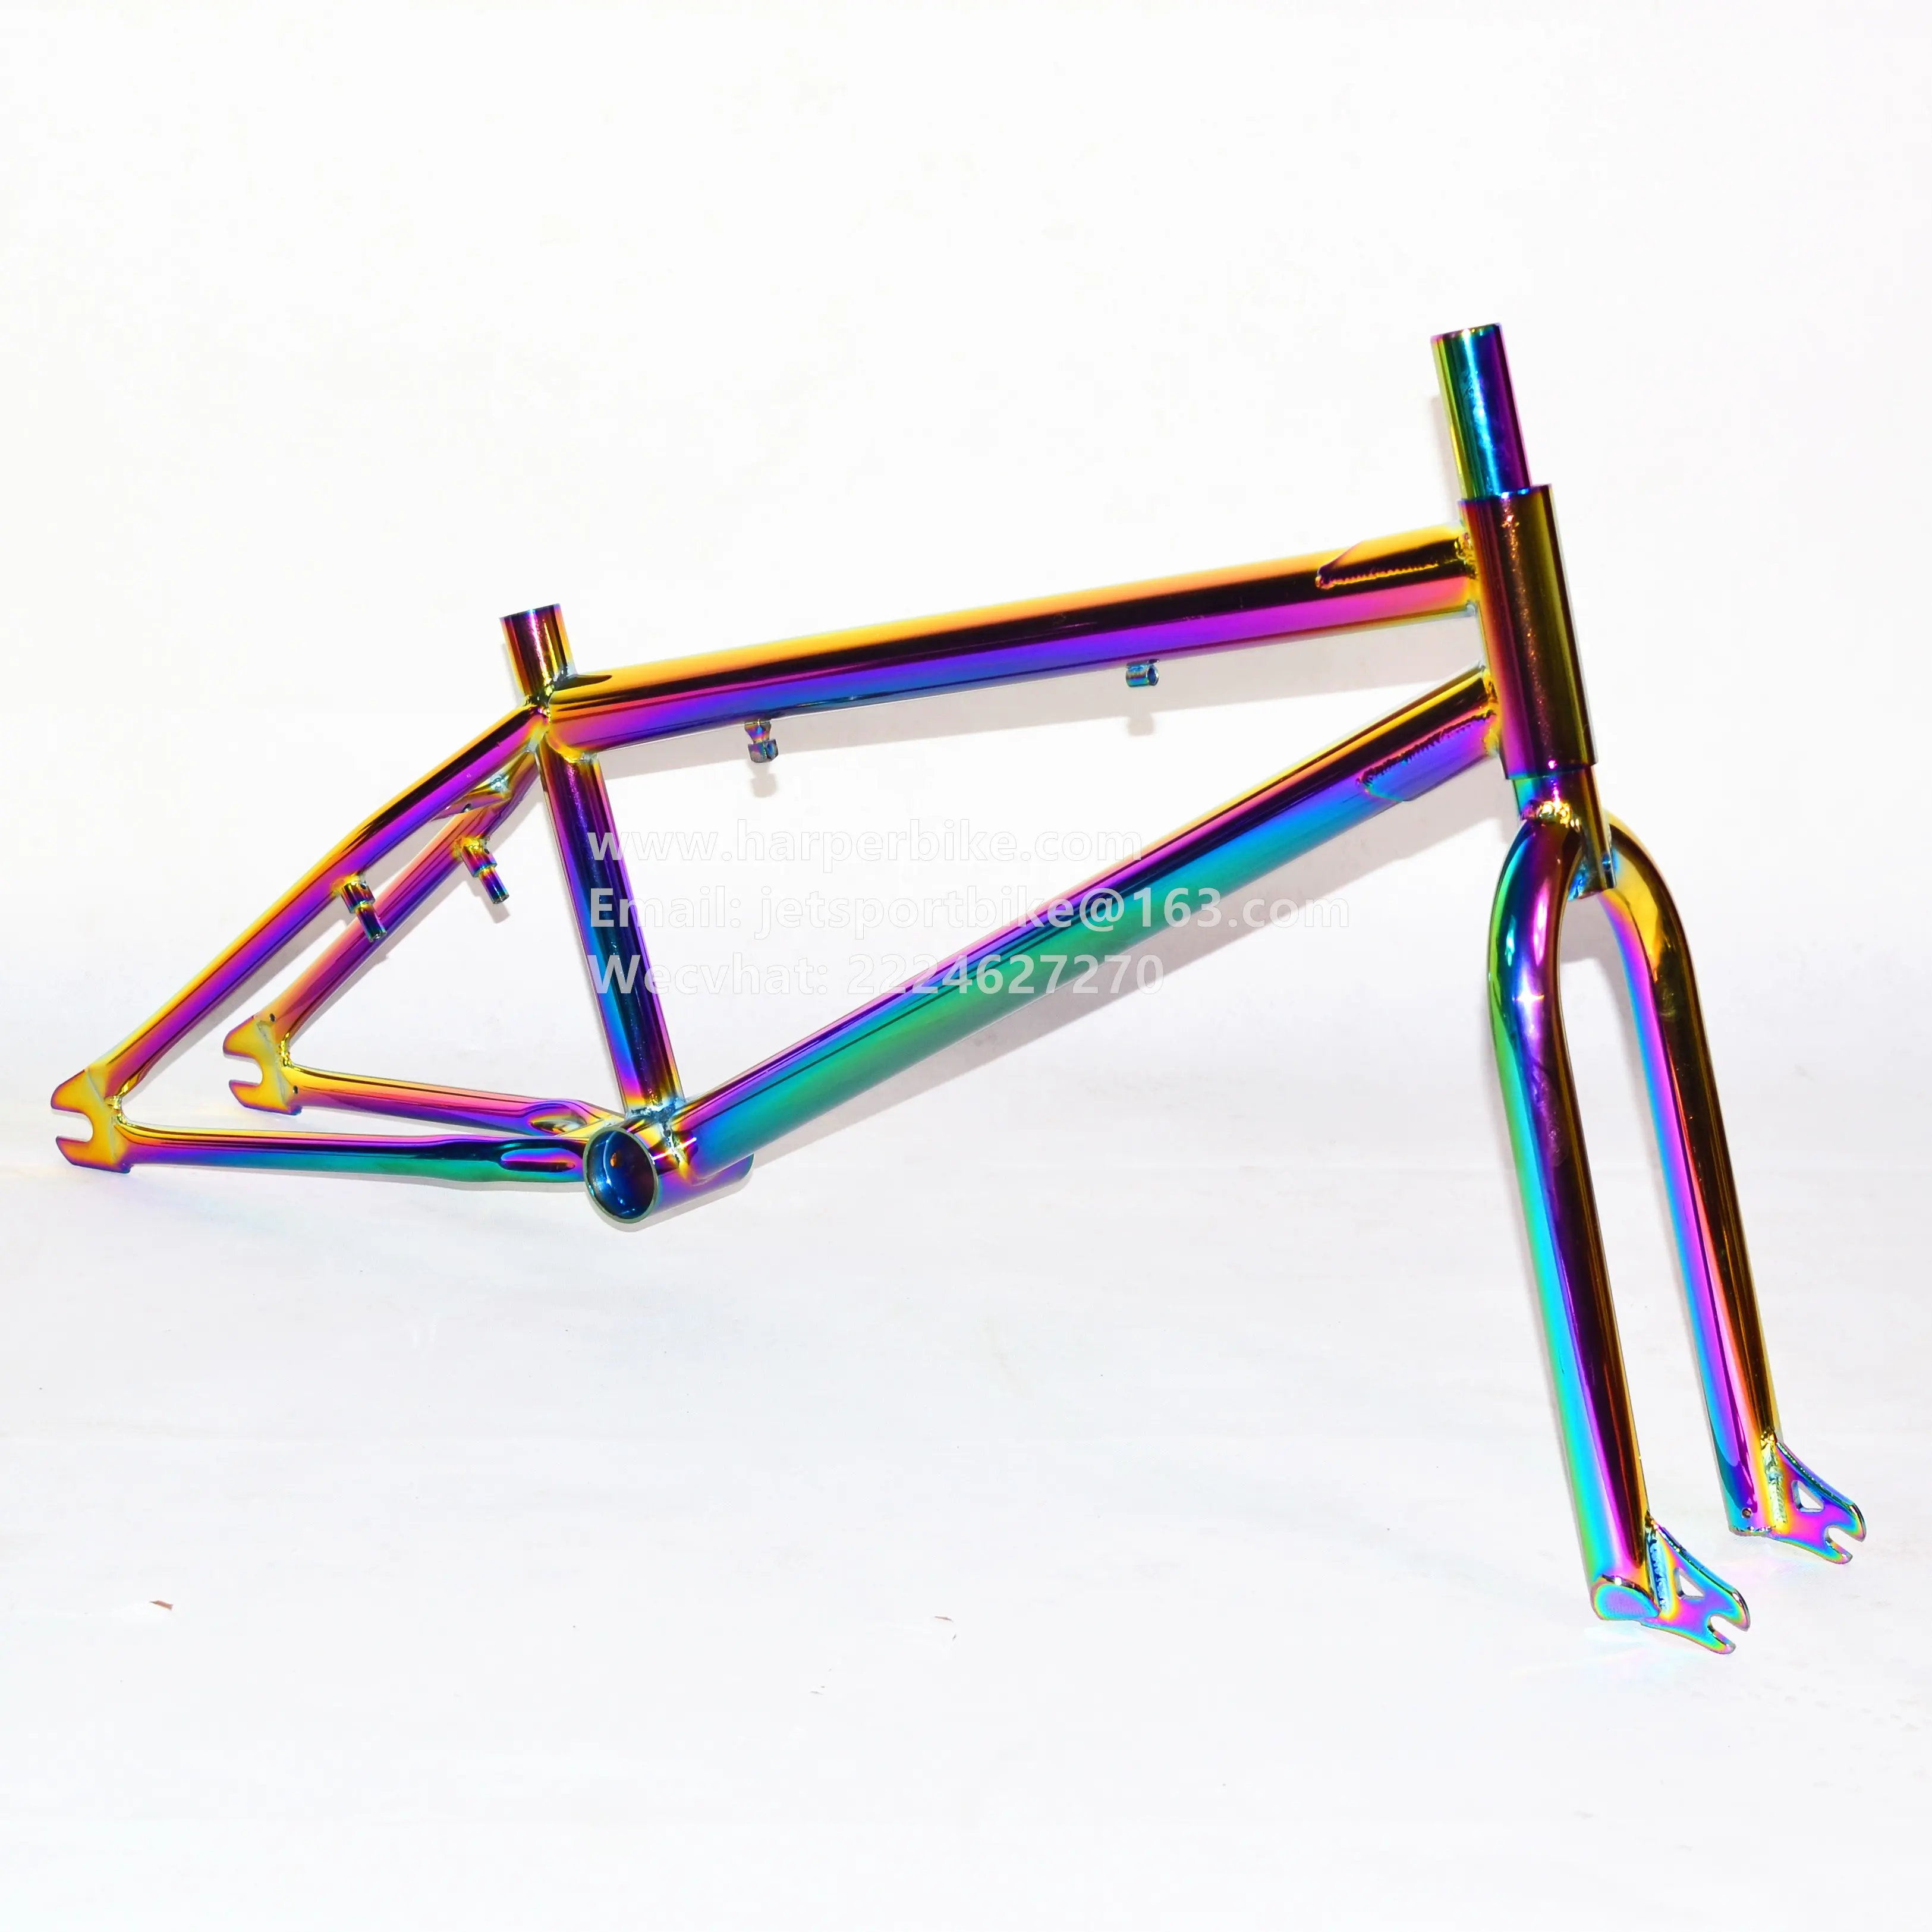 20 "full cromoly telaio della bicicletta bmx/forcella set chiazza di petrolio colorful rainbow colore carburante